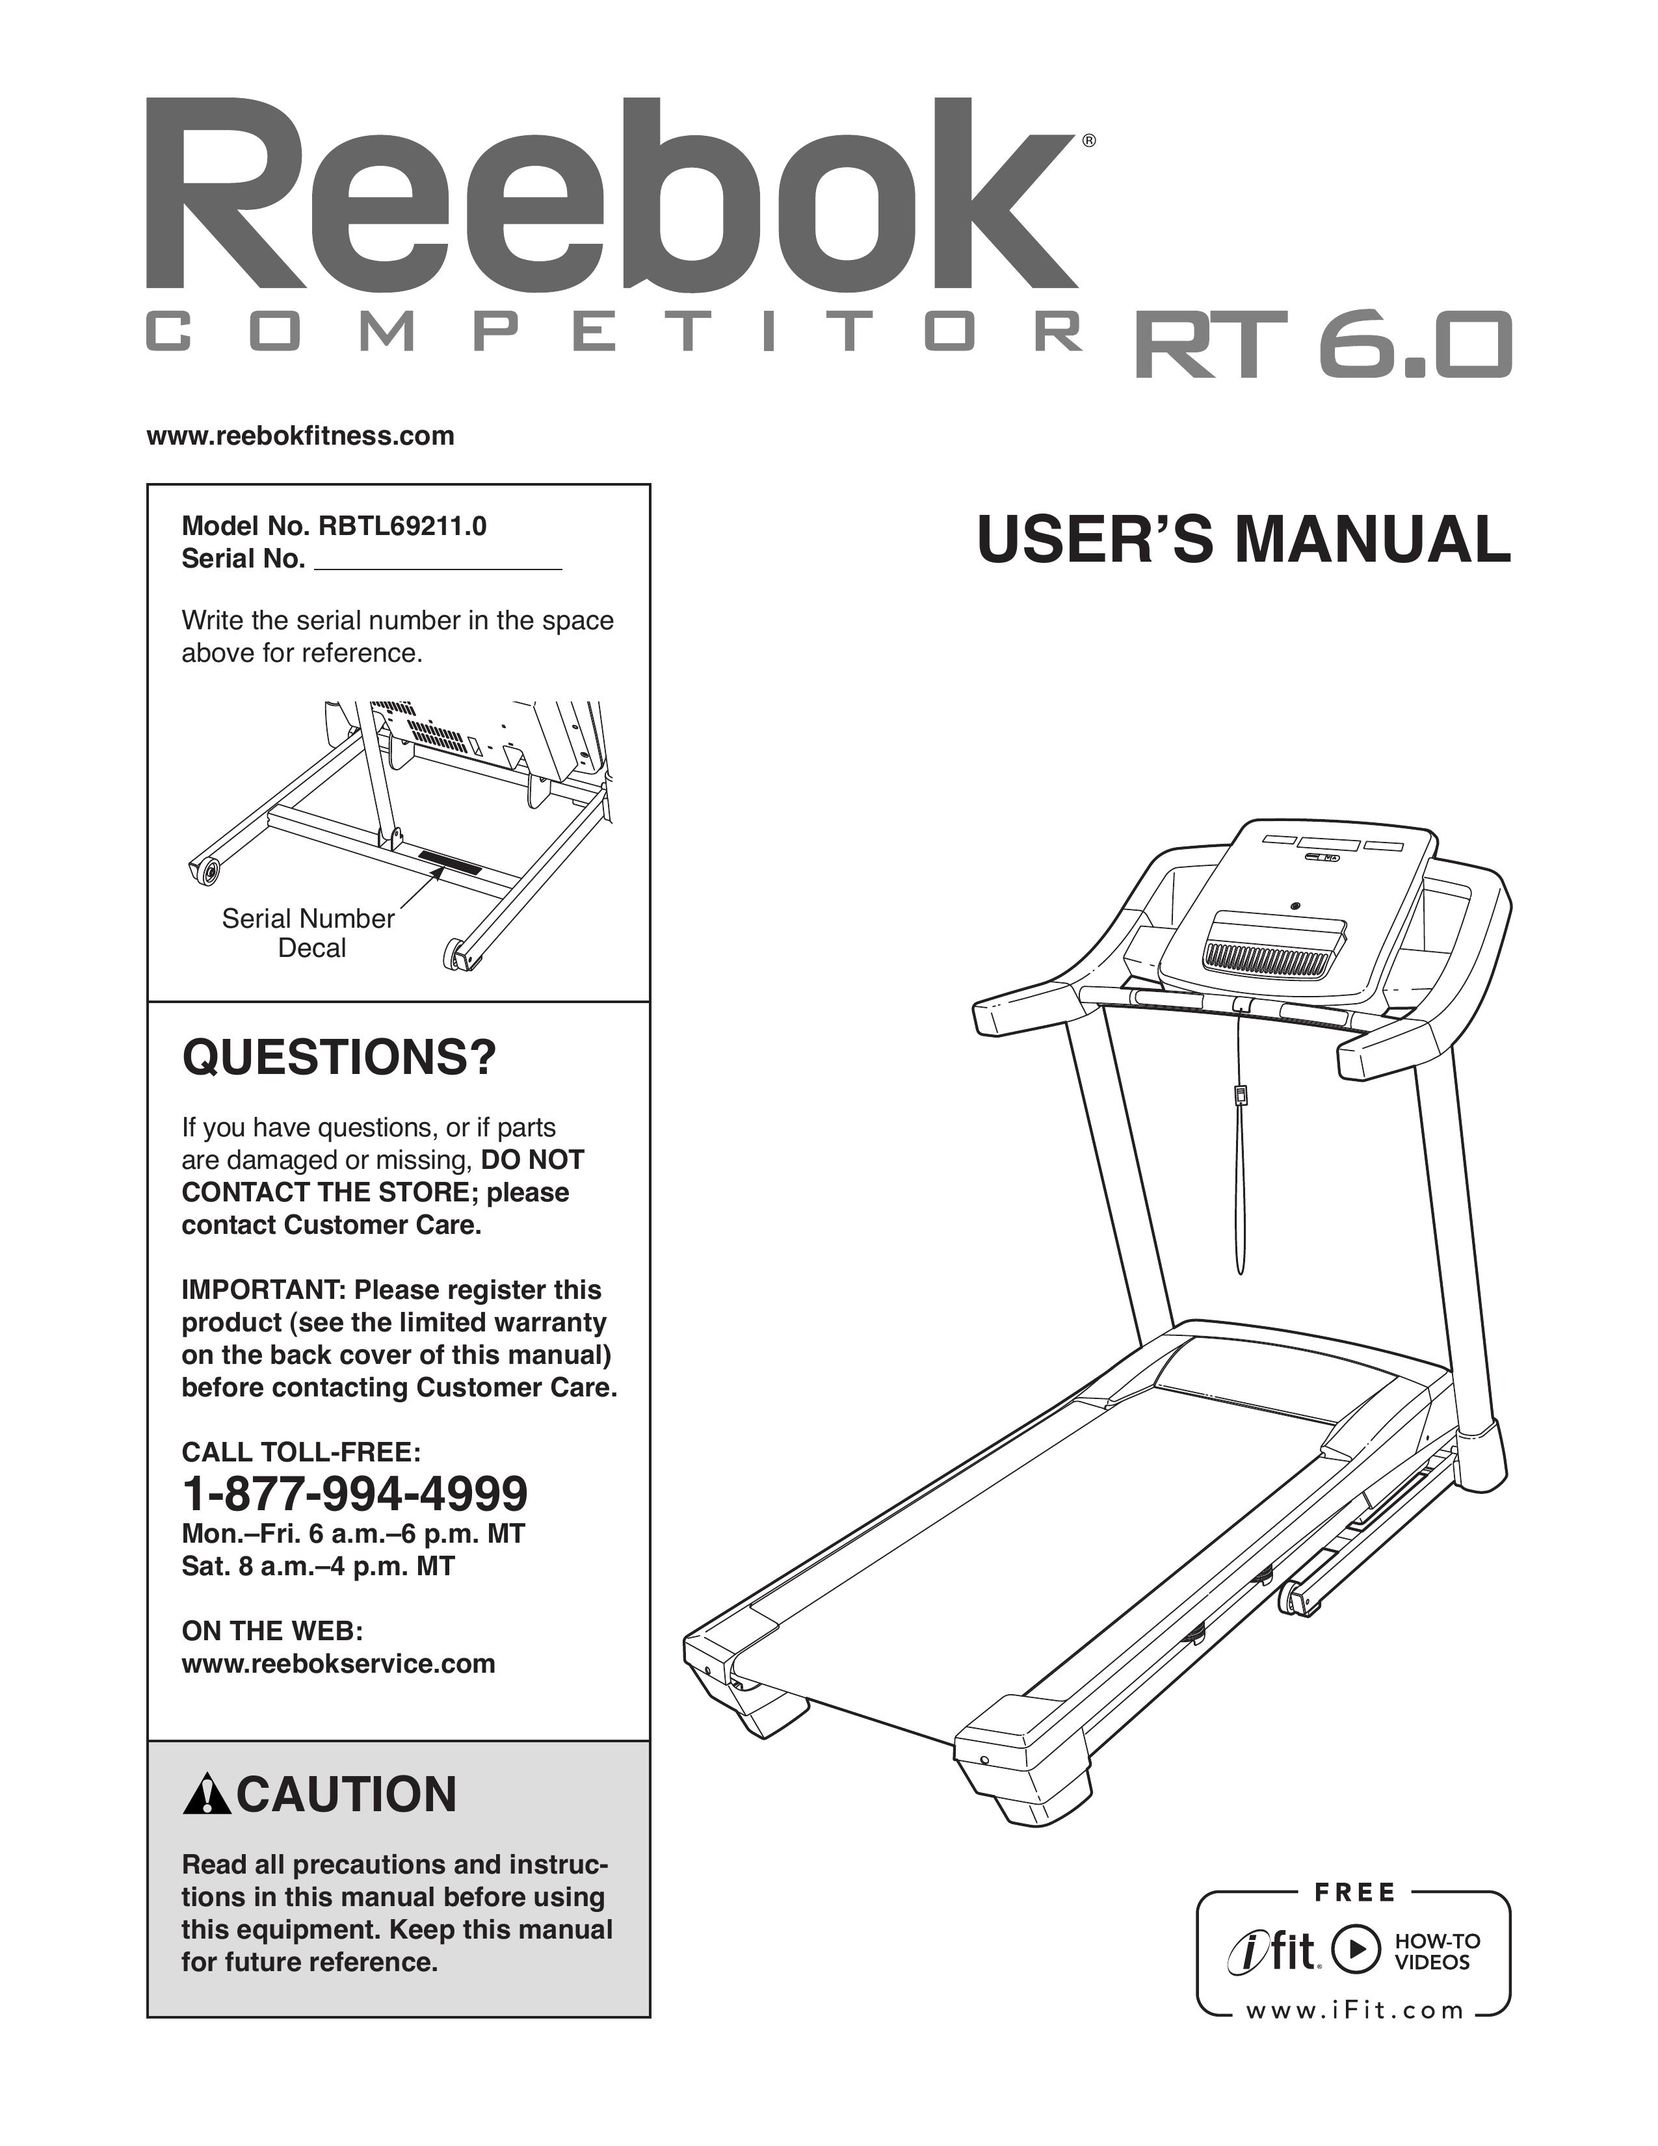 Reebok Fitness R T 6.0 Treadmill User Manual